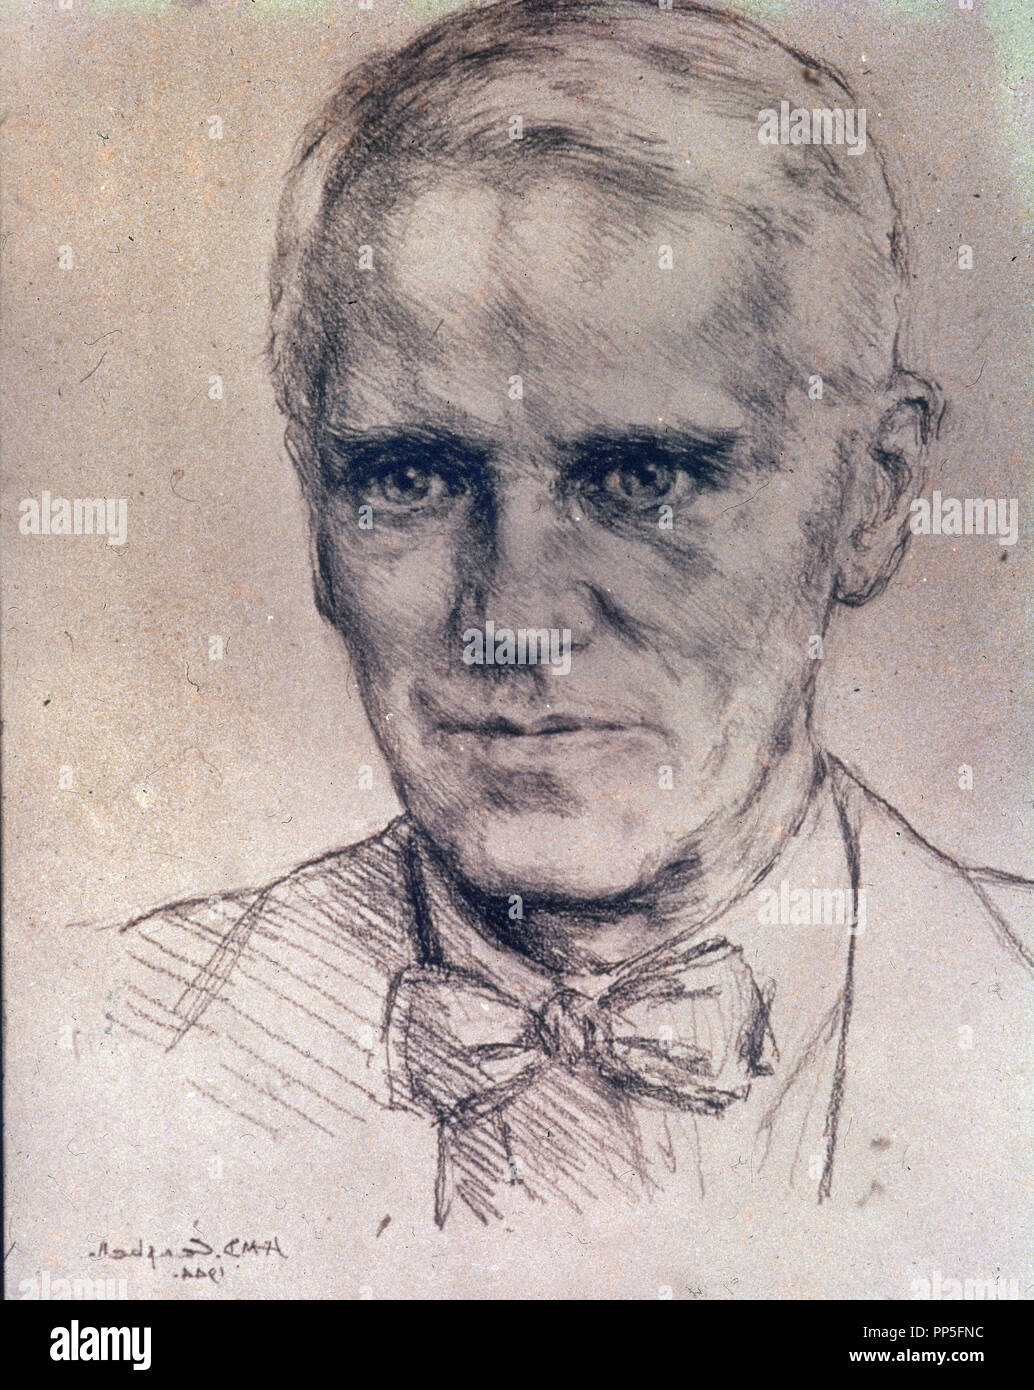 ALEXANDER FLEMING (1881-1955) - medico scozzese, microbiologo e farmacologo. Foto Stock